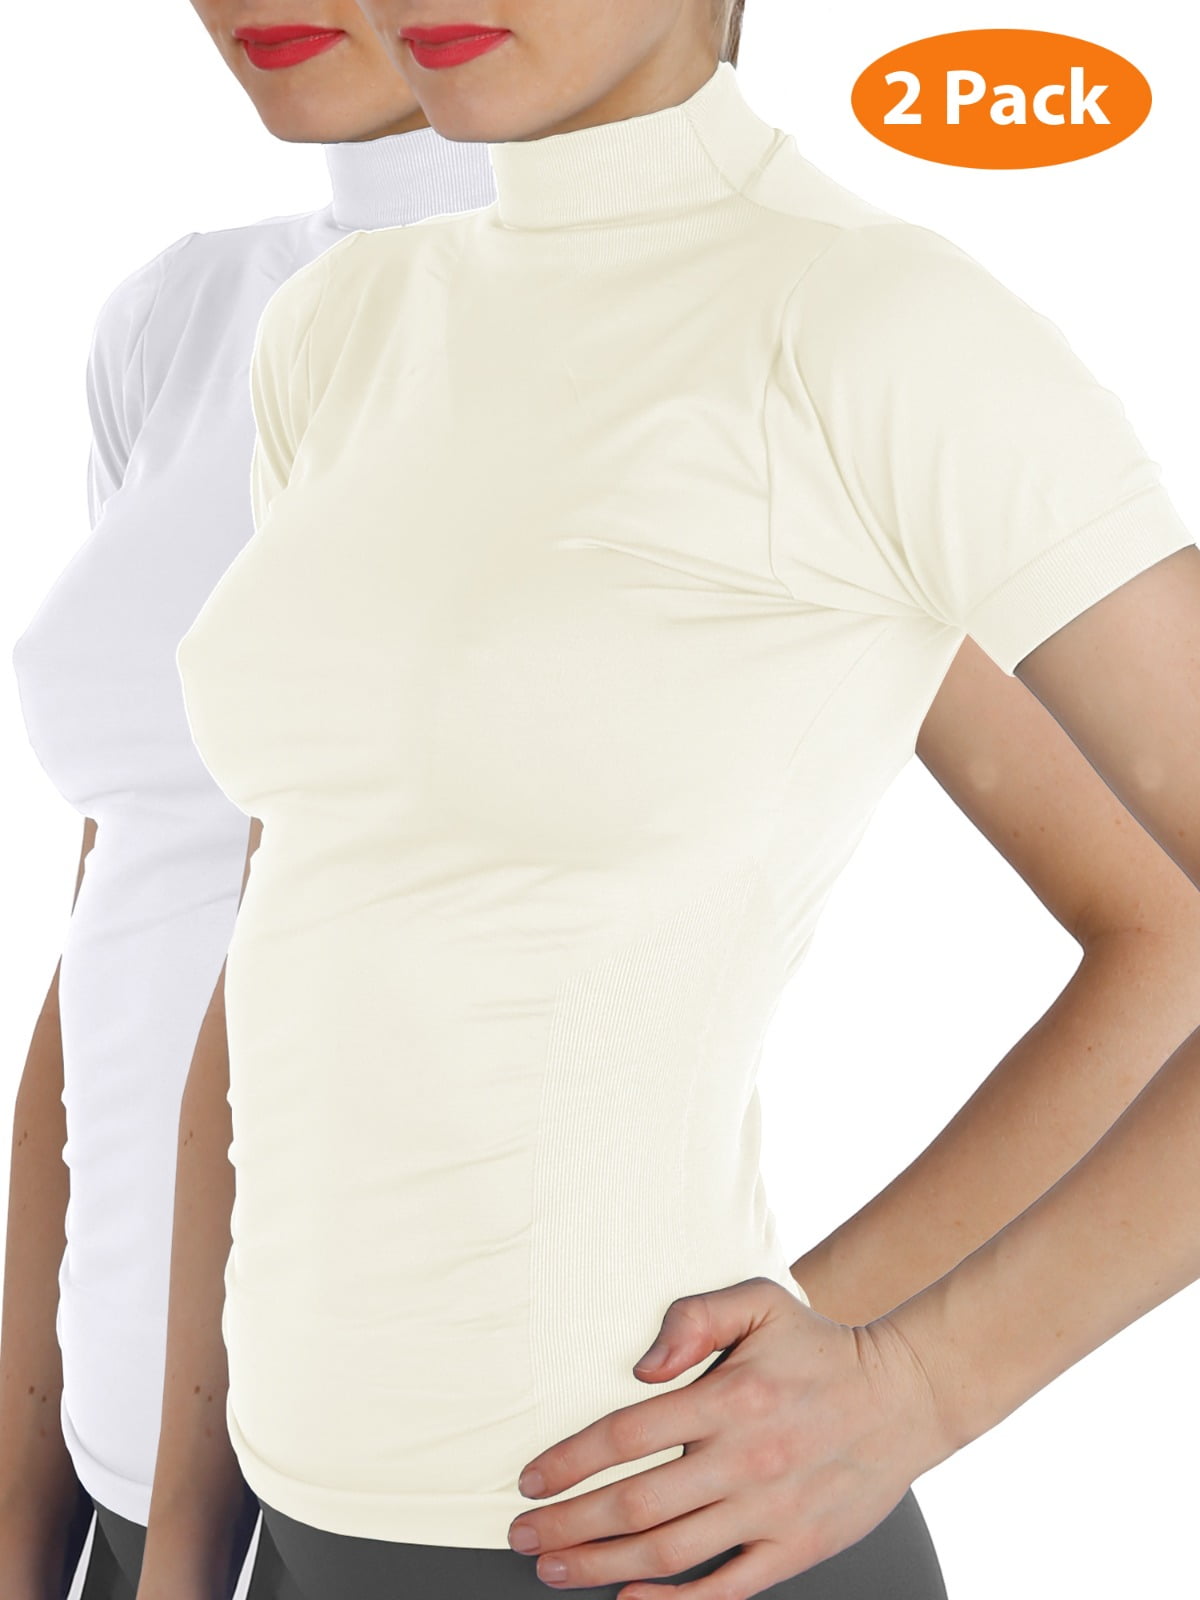 2 Pack Women Short Sleeves Mock Neck Turtleneck Shirts Stretchy Side